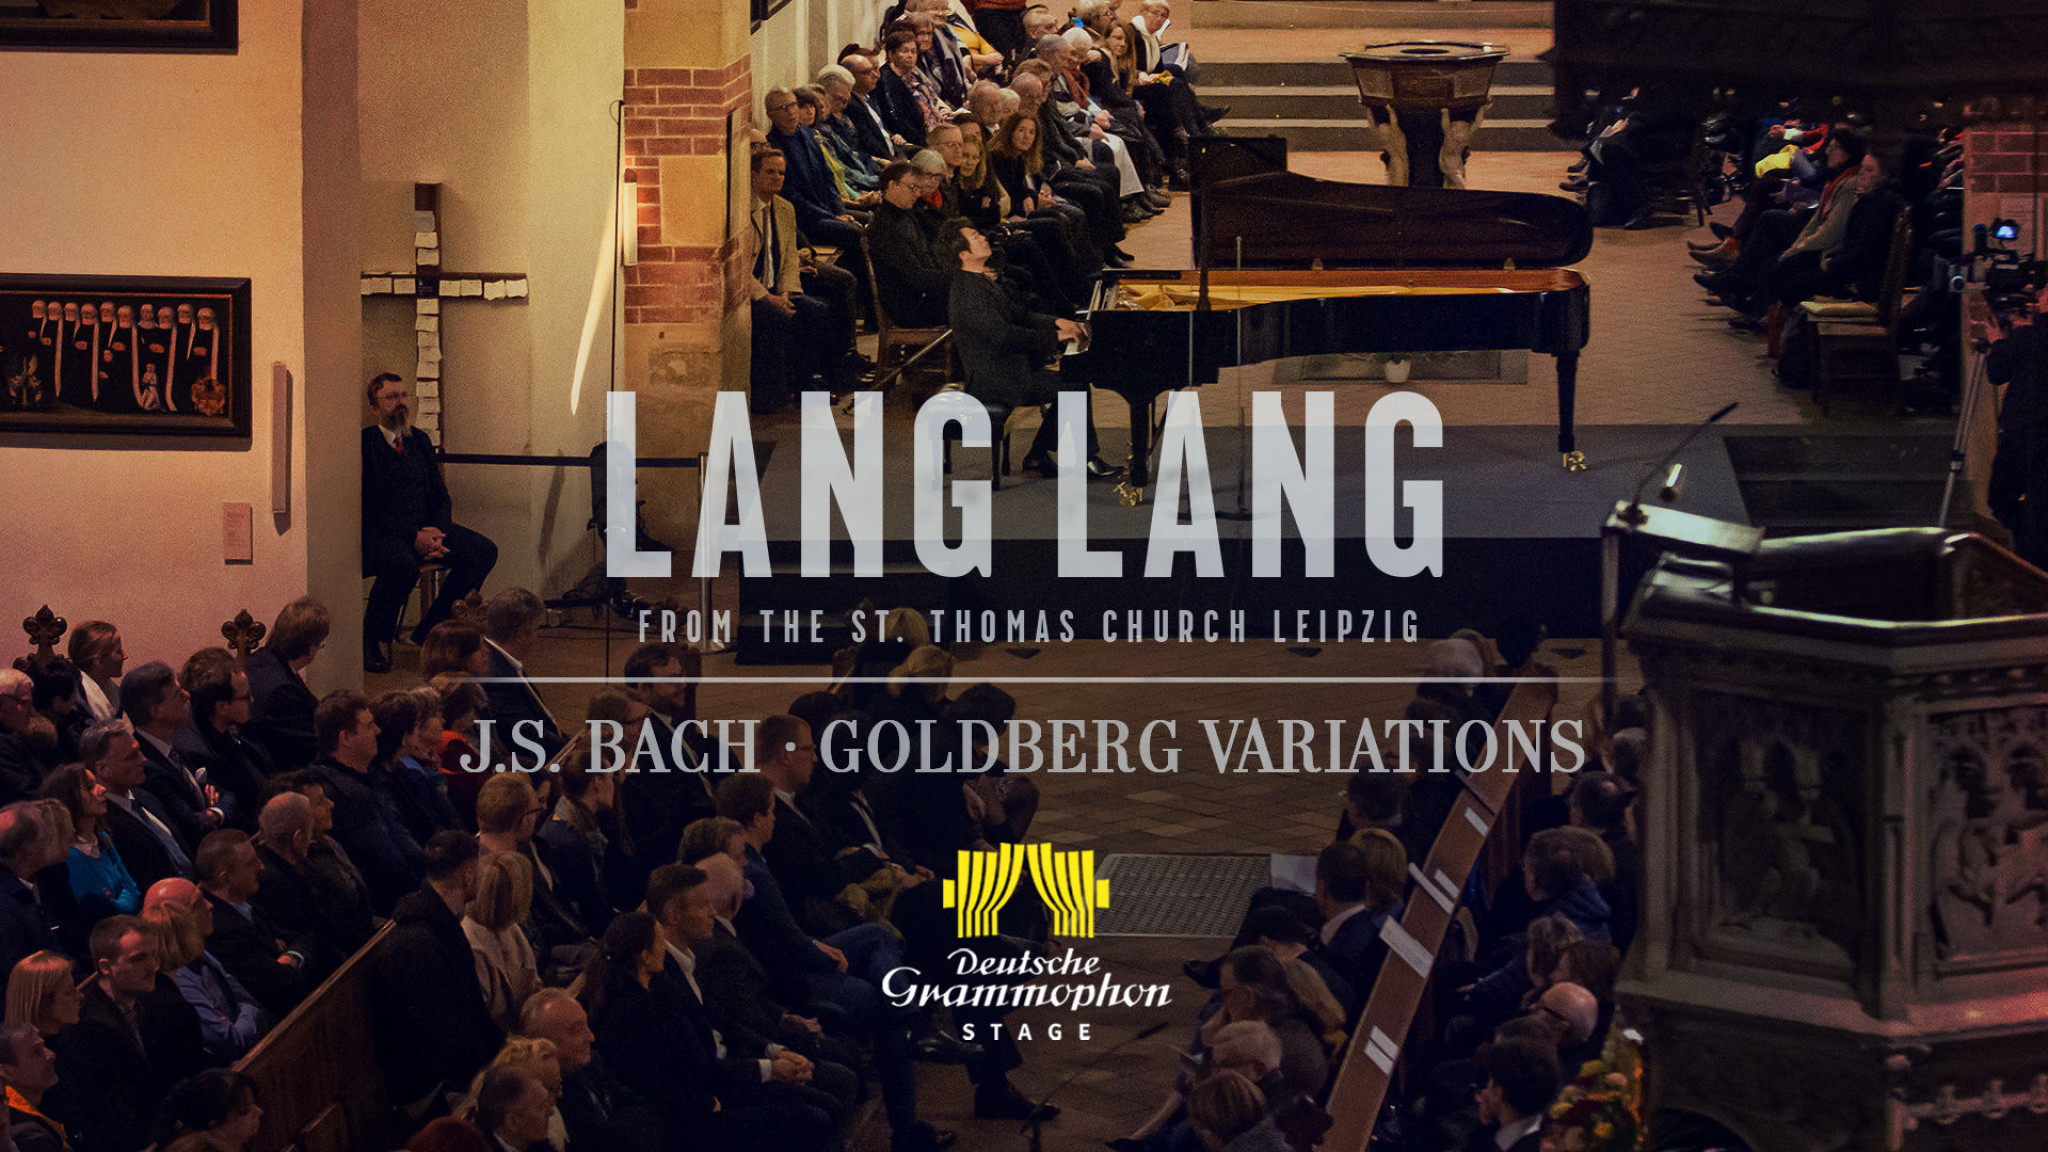 Lang Lang spielt Bachs Goldberg-Variationen in der St. Thomas Kirche, Leipzig auf DG Stage